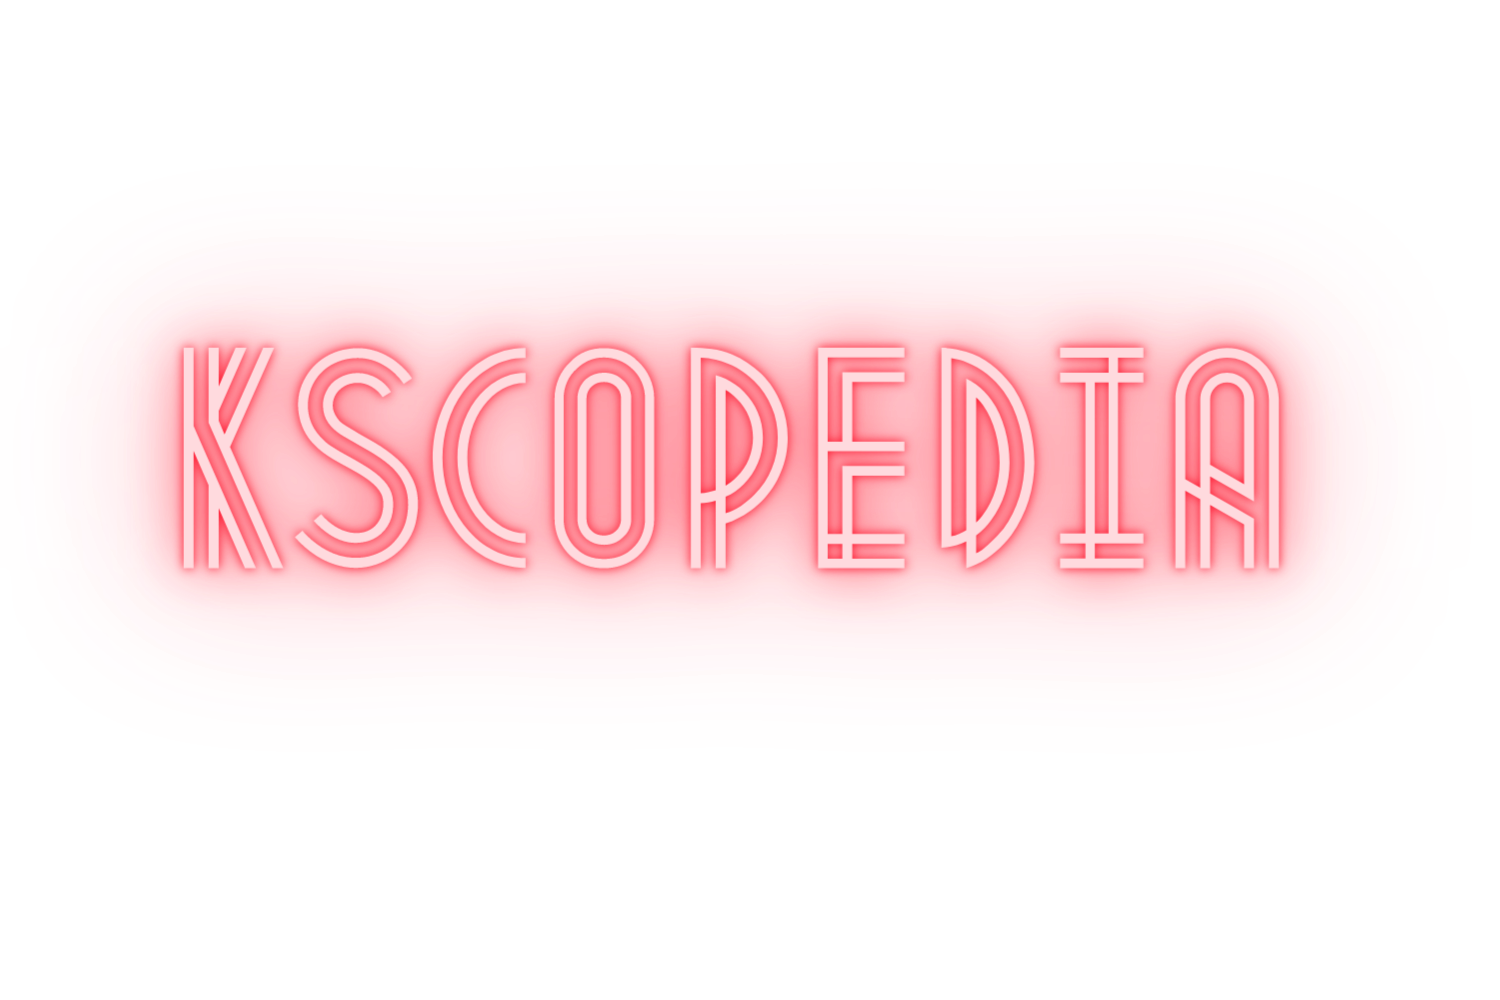 kscopedia logo